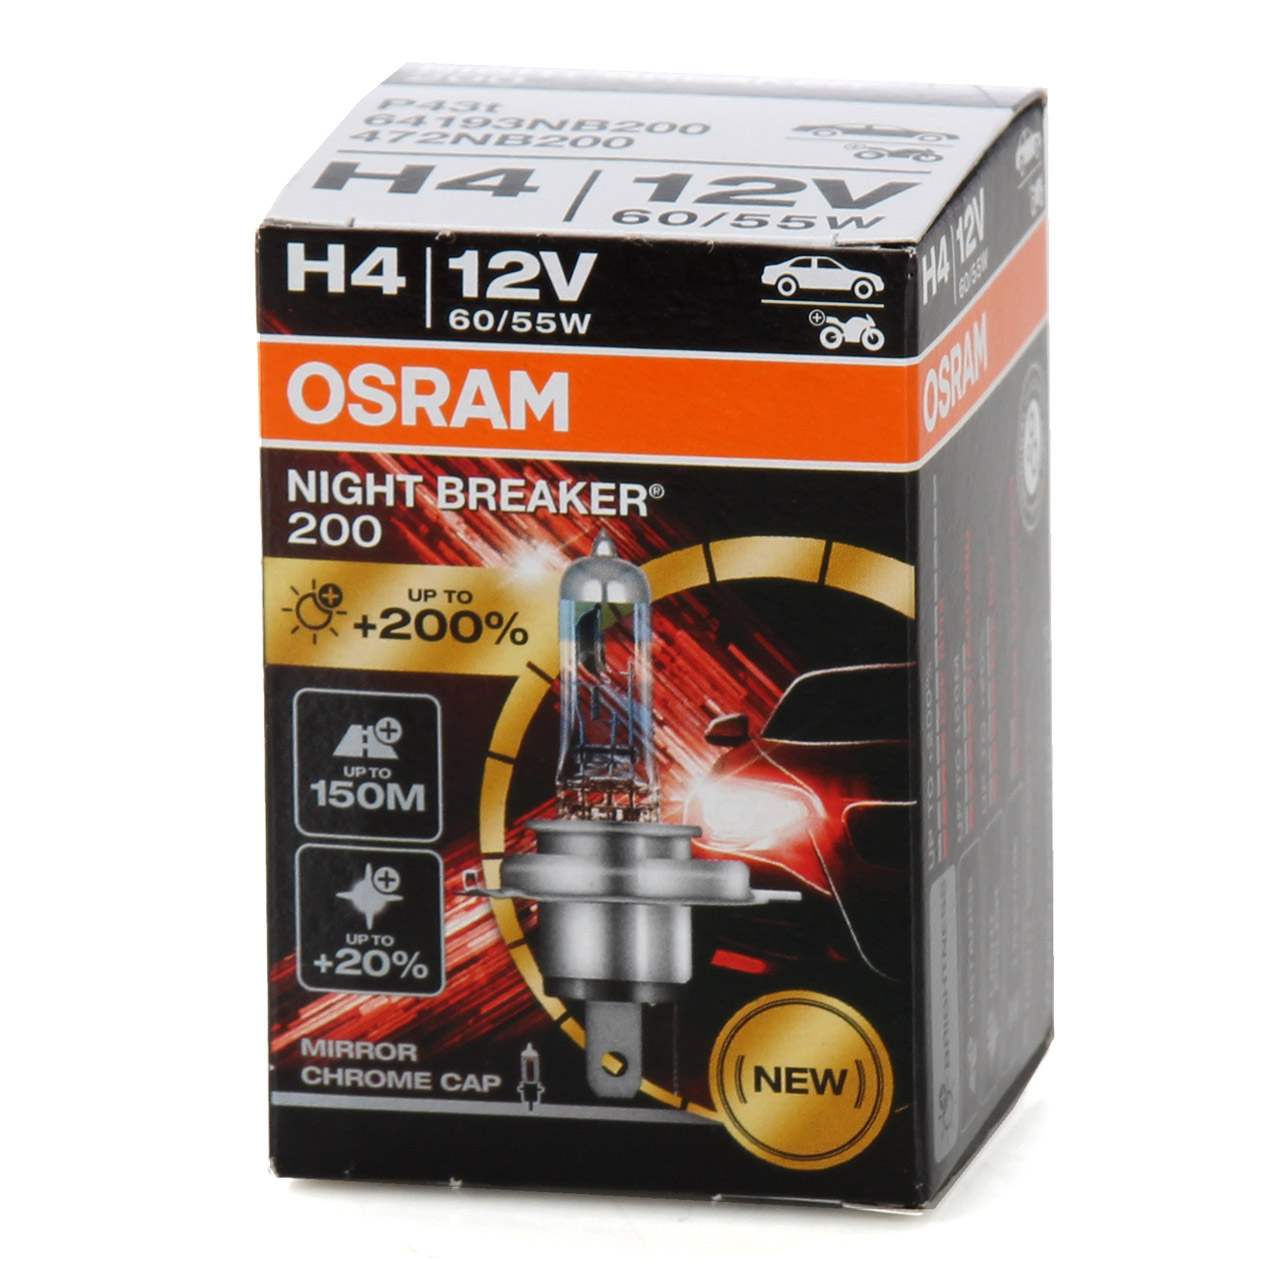 10x OSRAM 64193NB200 Glühlampe H4 NIGHT BREAKER 200 12V 60/55W P43t +200%